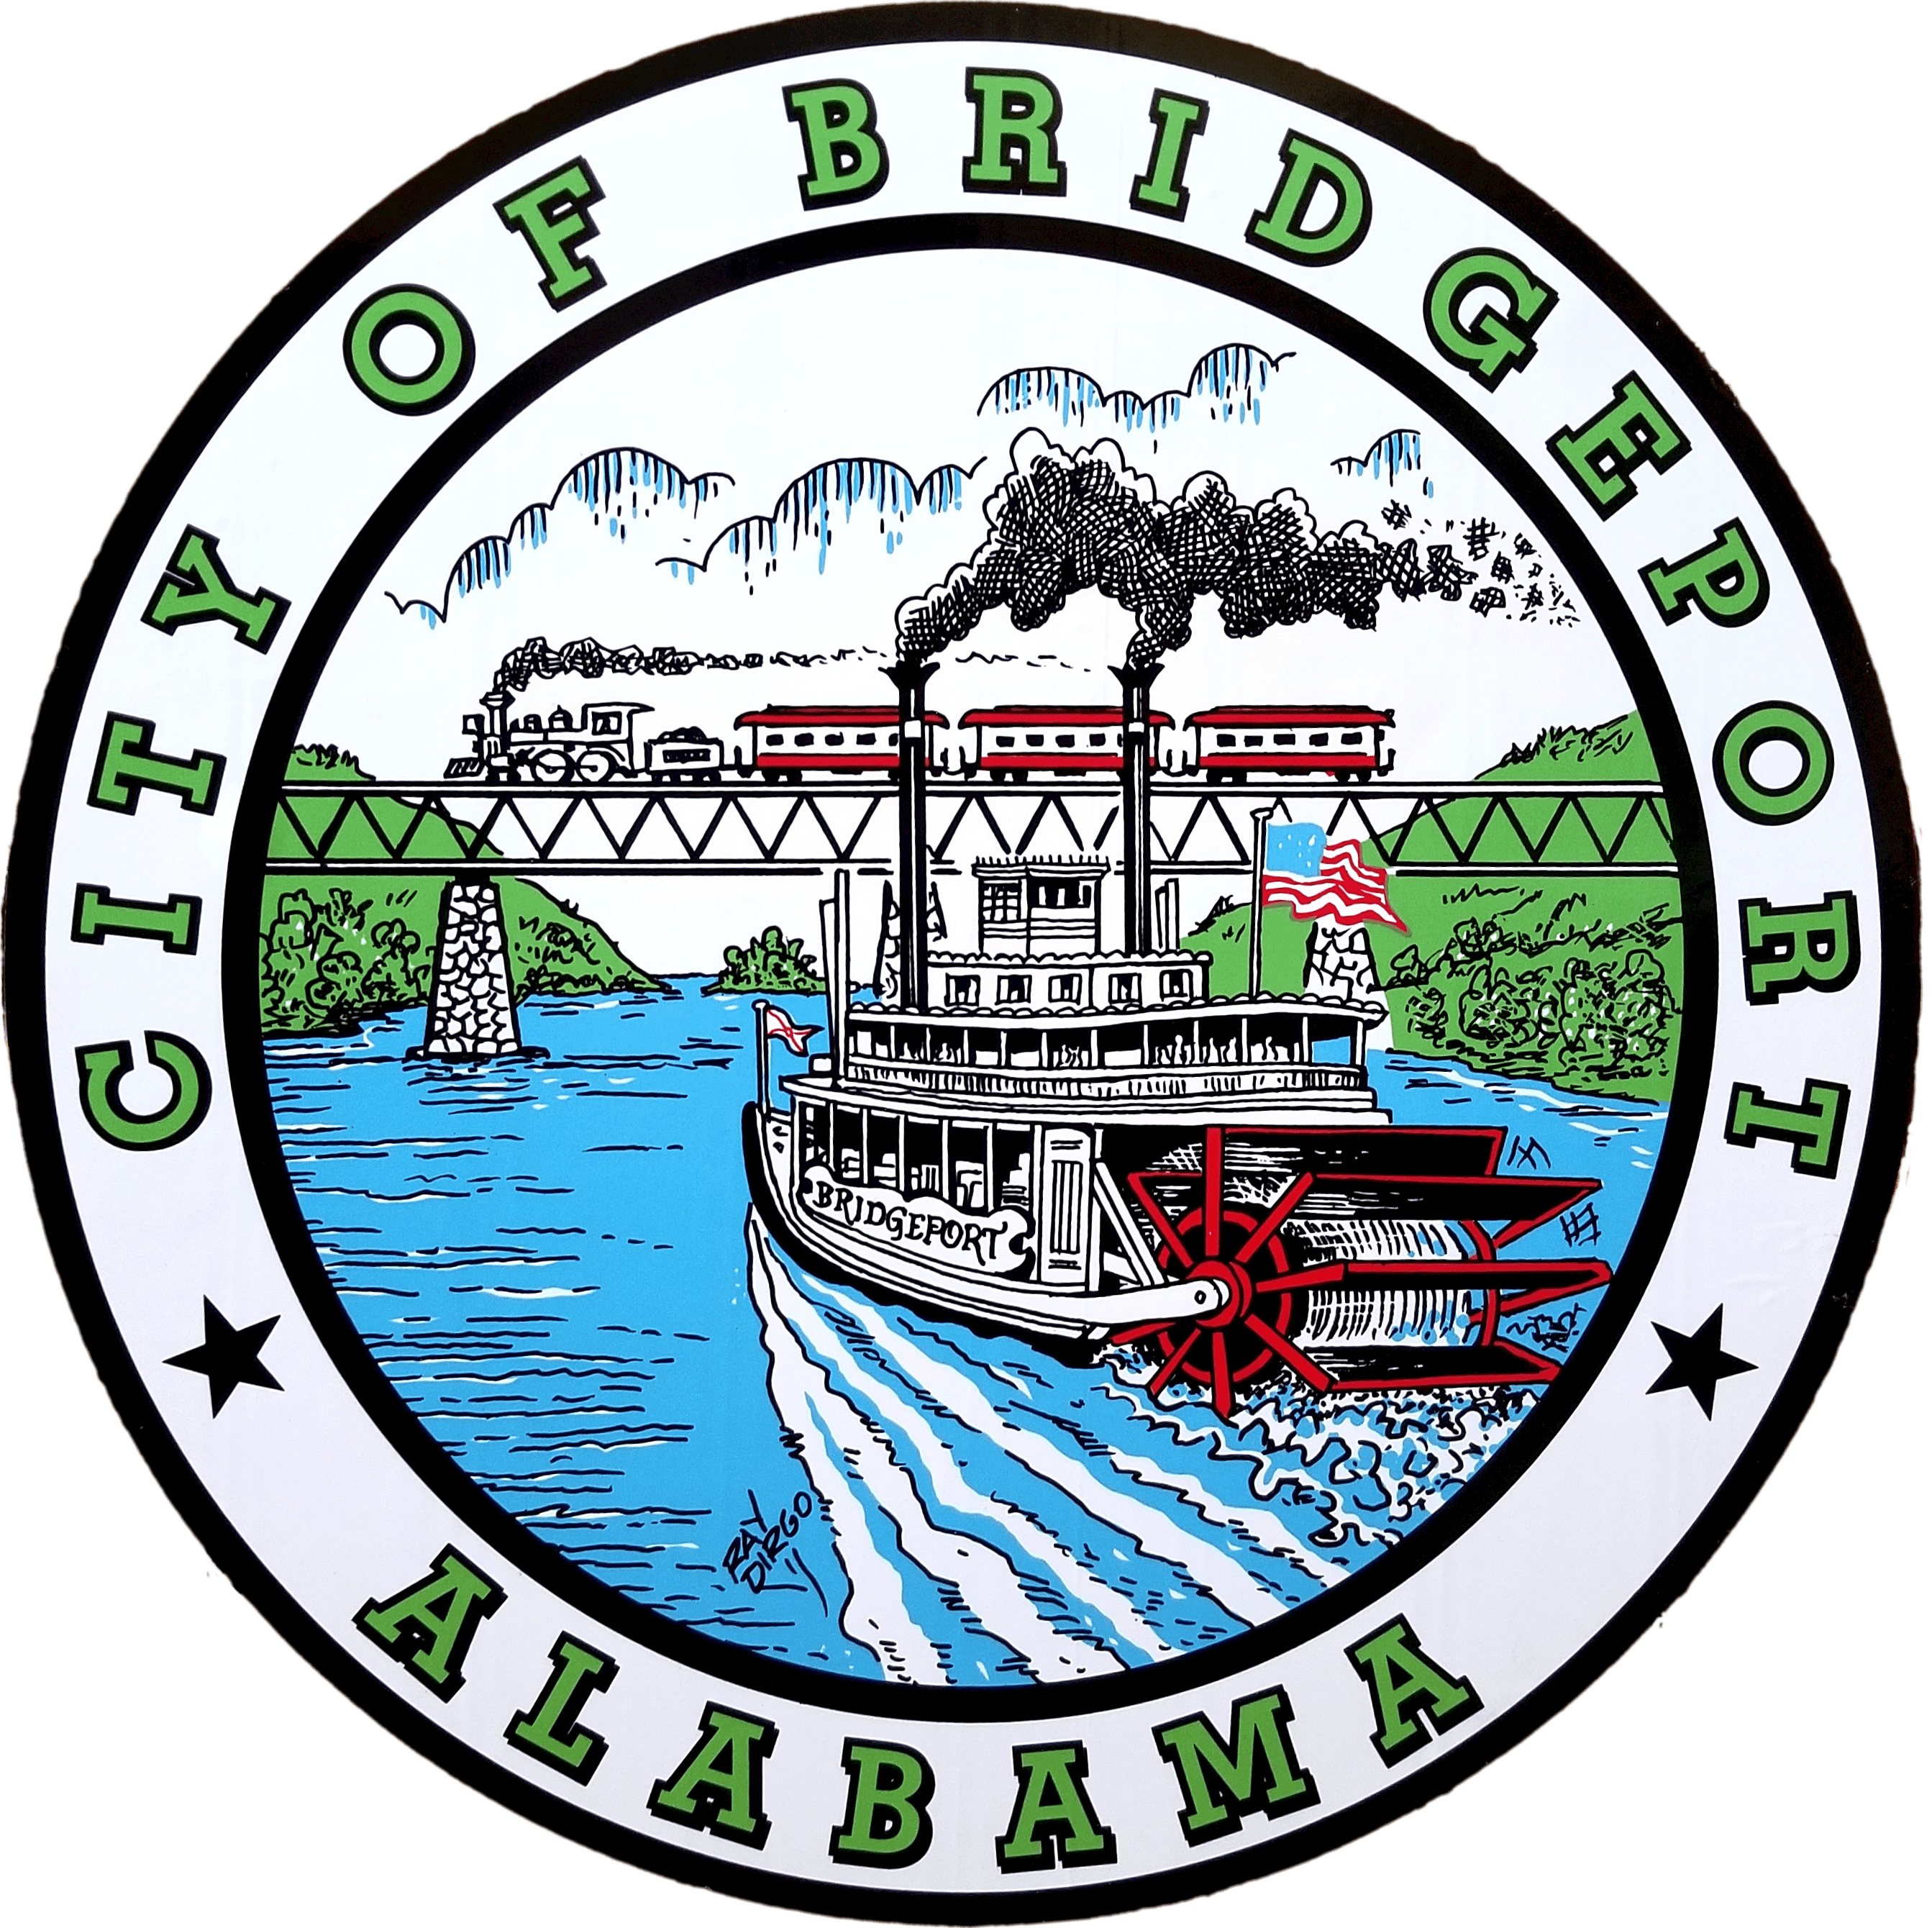 Bridgeport Completed Accelerator Program